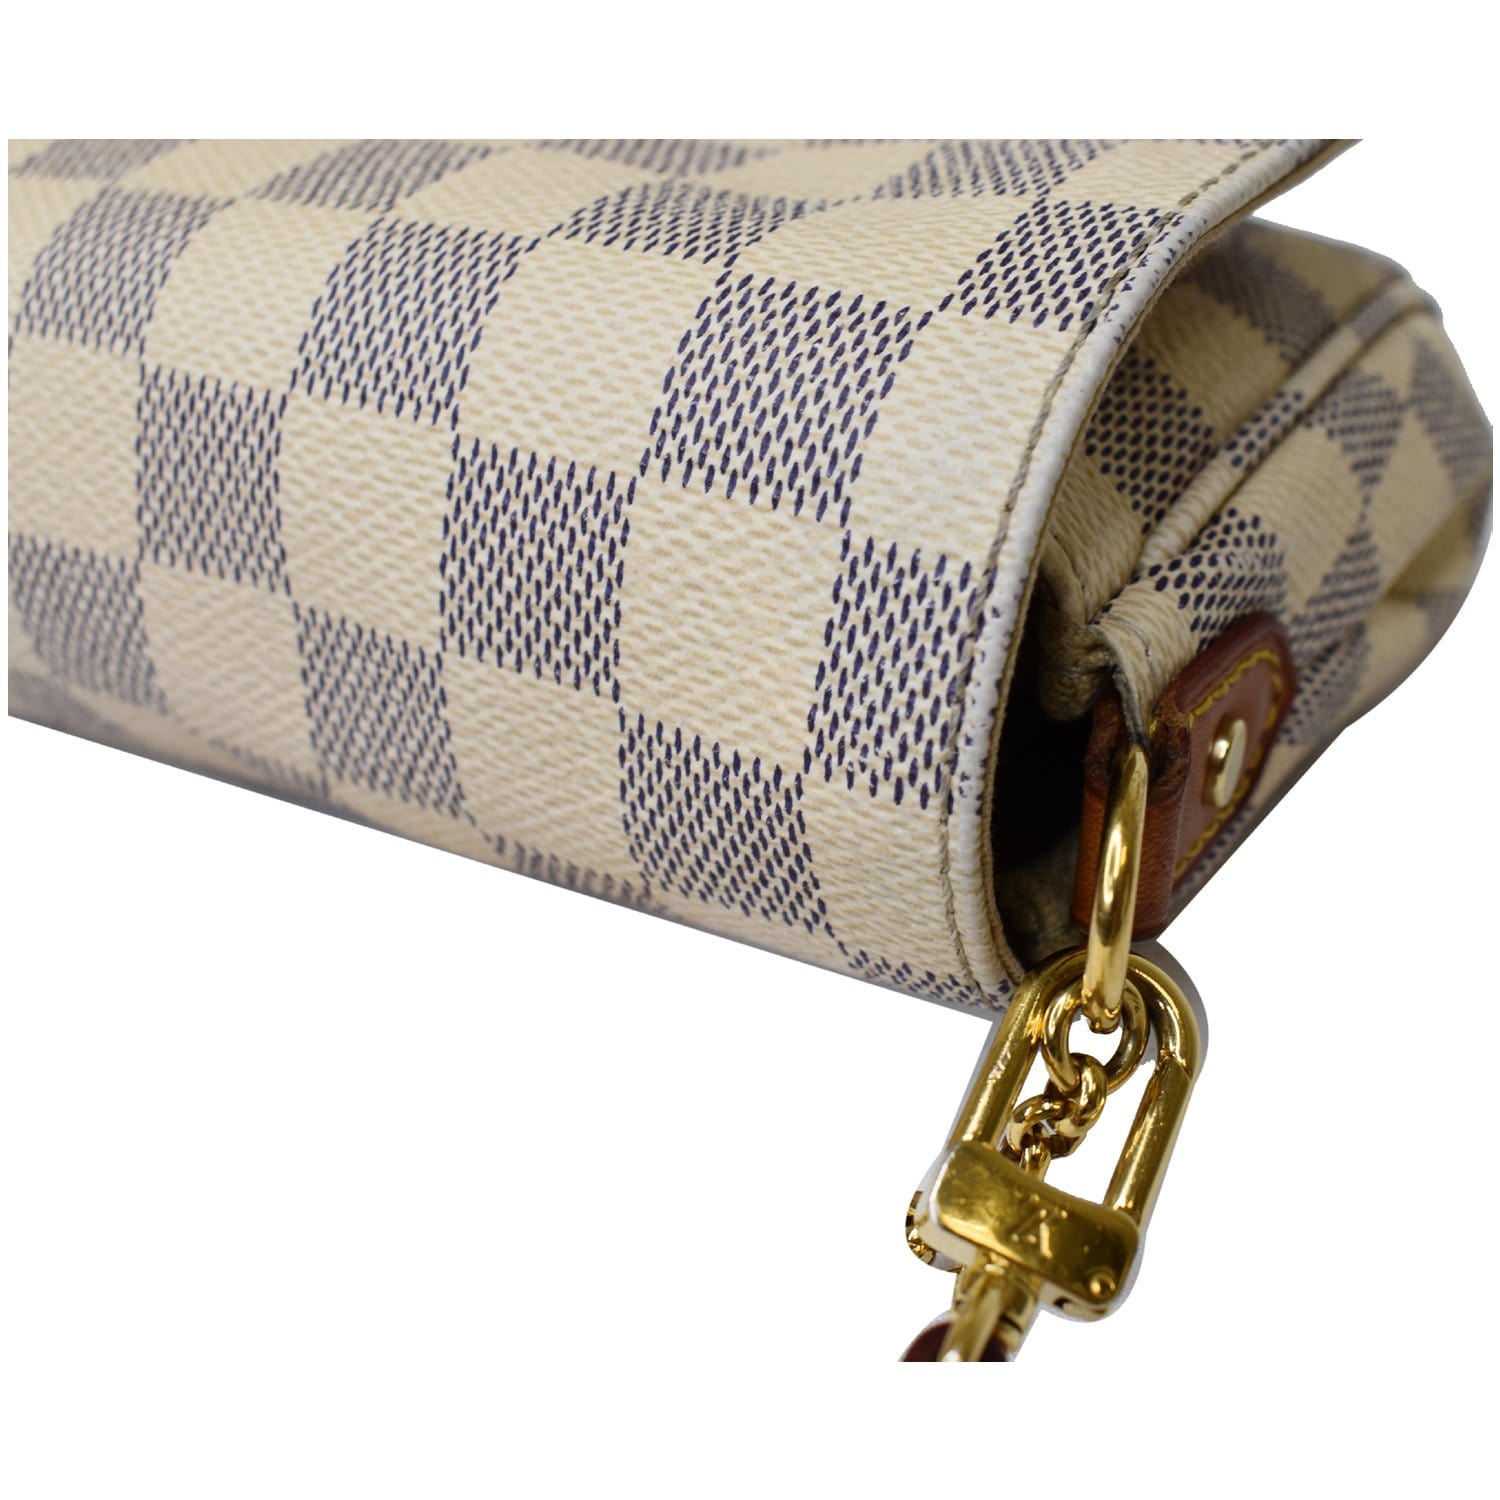 Louis Vuitton POCHETTEMÉTIS prefect everyday bag luxury fashion